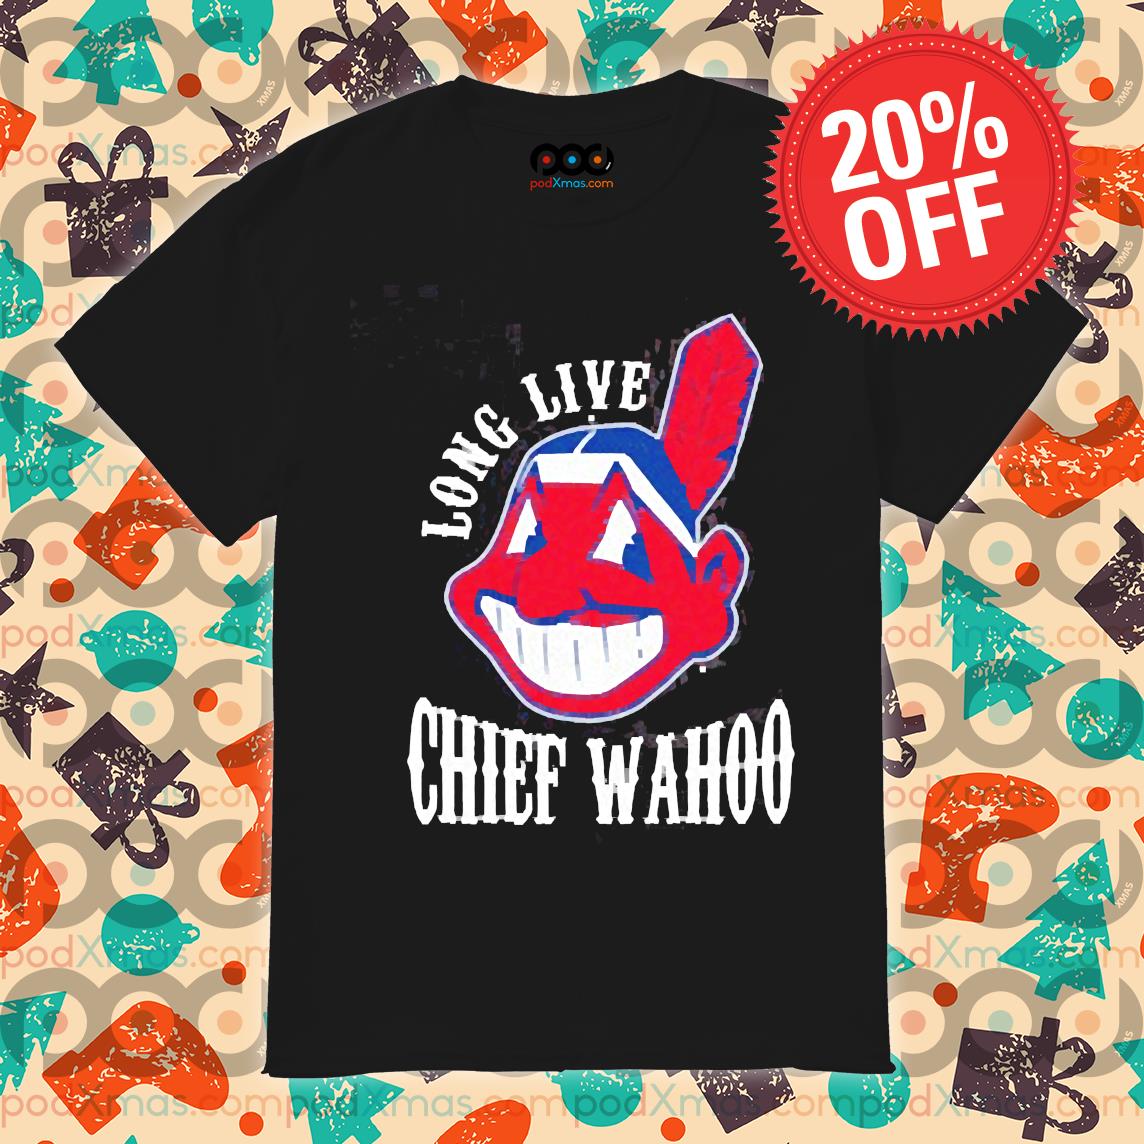 Long live Chief Wahoo shirt, hoodie, sweater and long sleeve